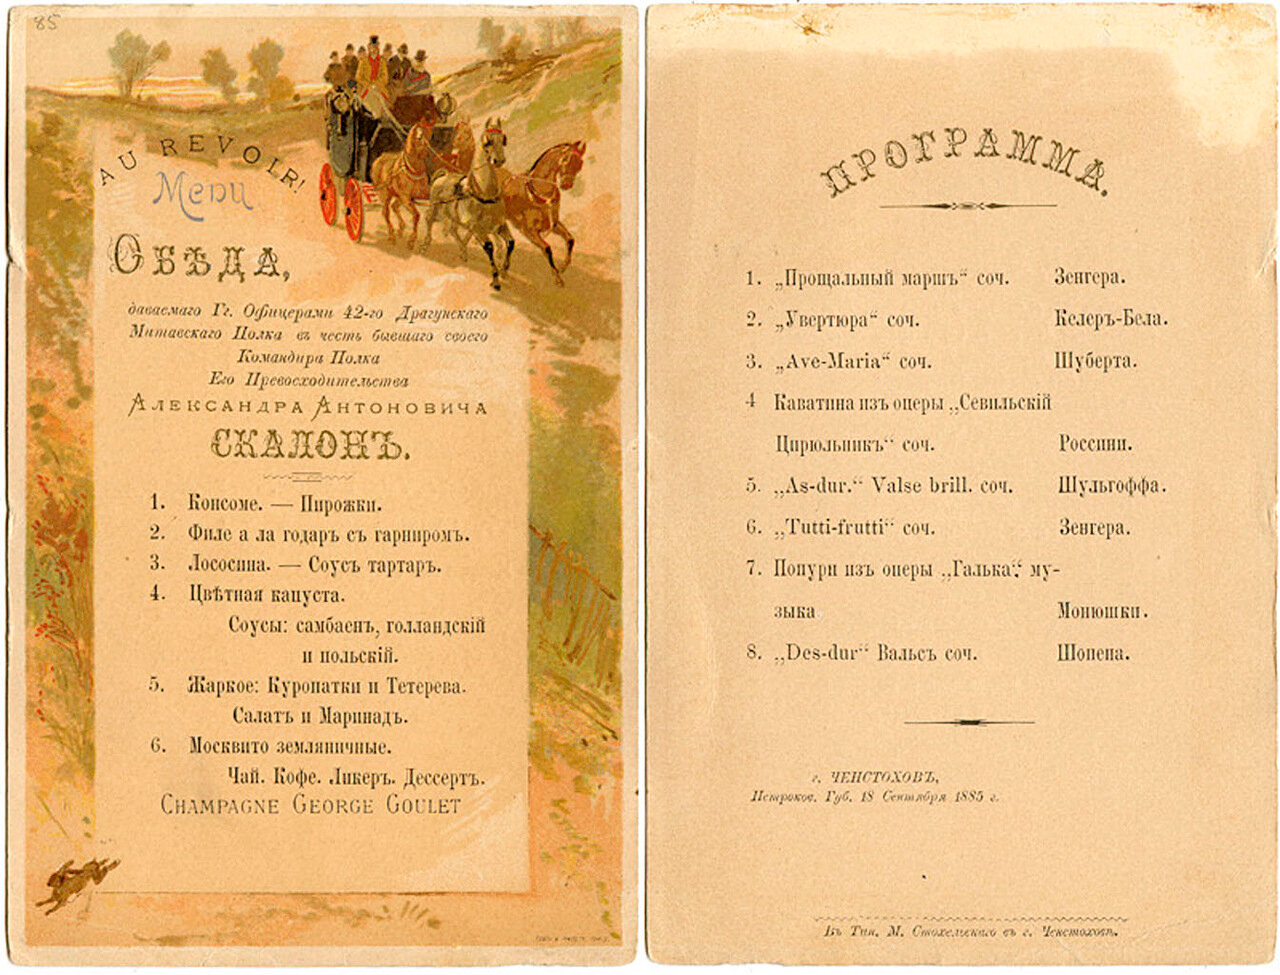 Меню и программа обеда офицеров 42 драгунского Митаевского полка в честь бывшего своего командира А.А.Скалона 18 сентября 1885 г.